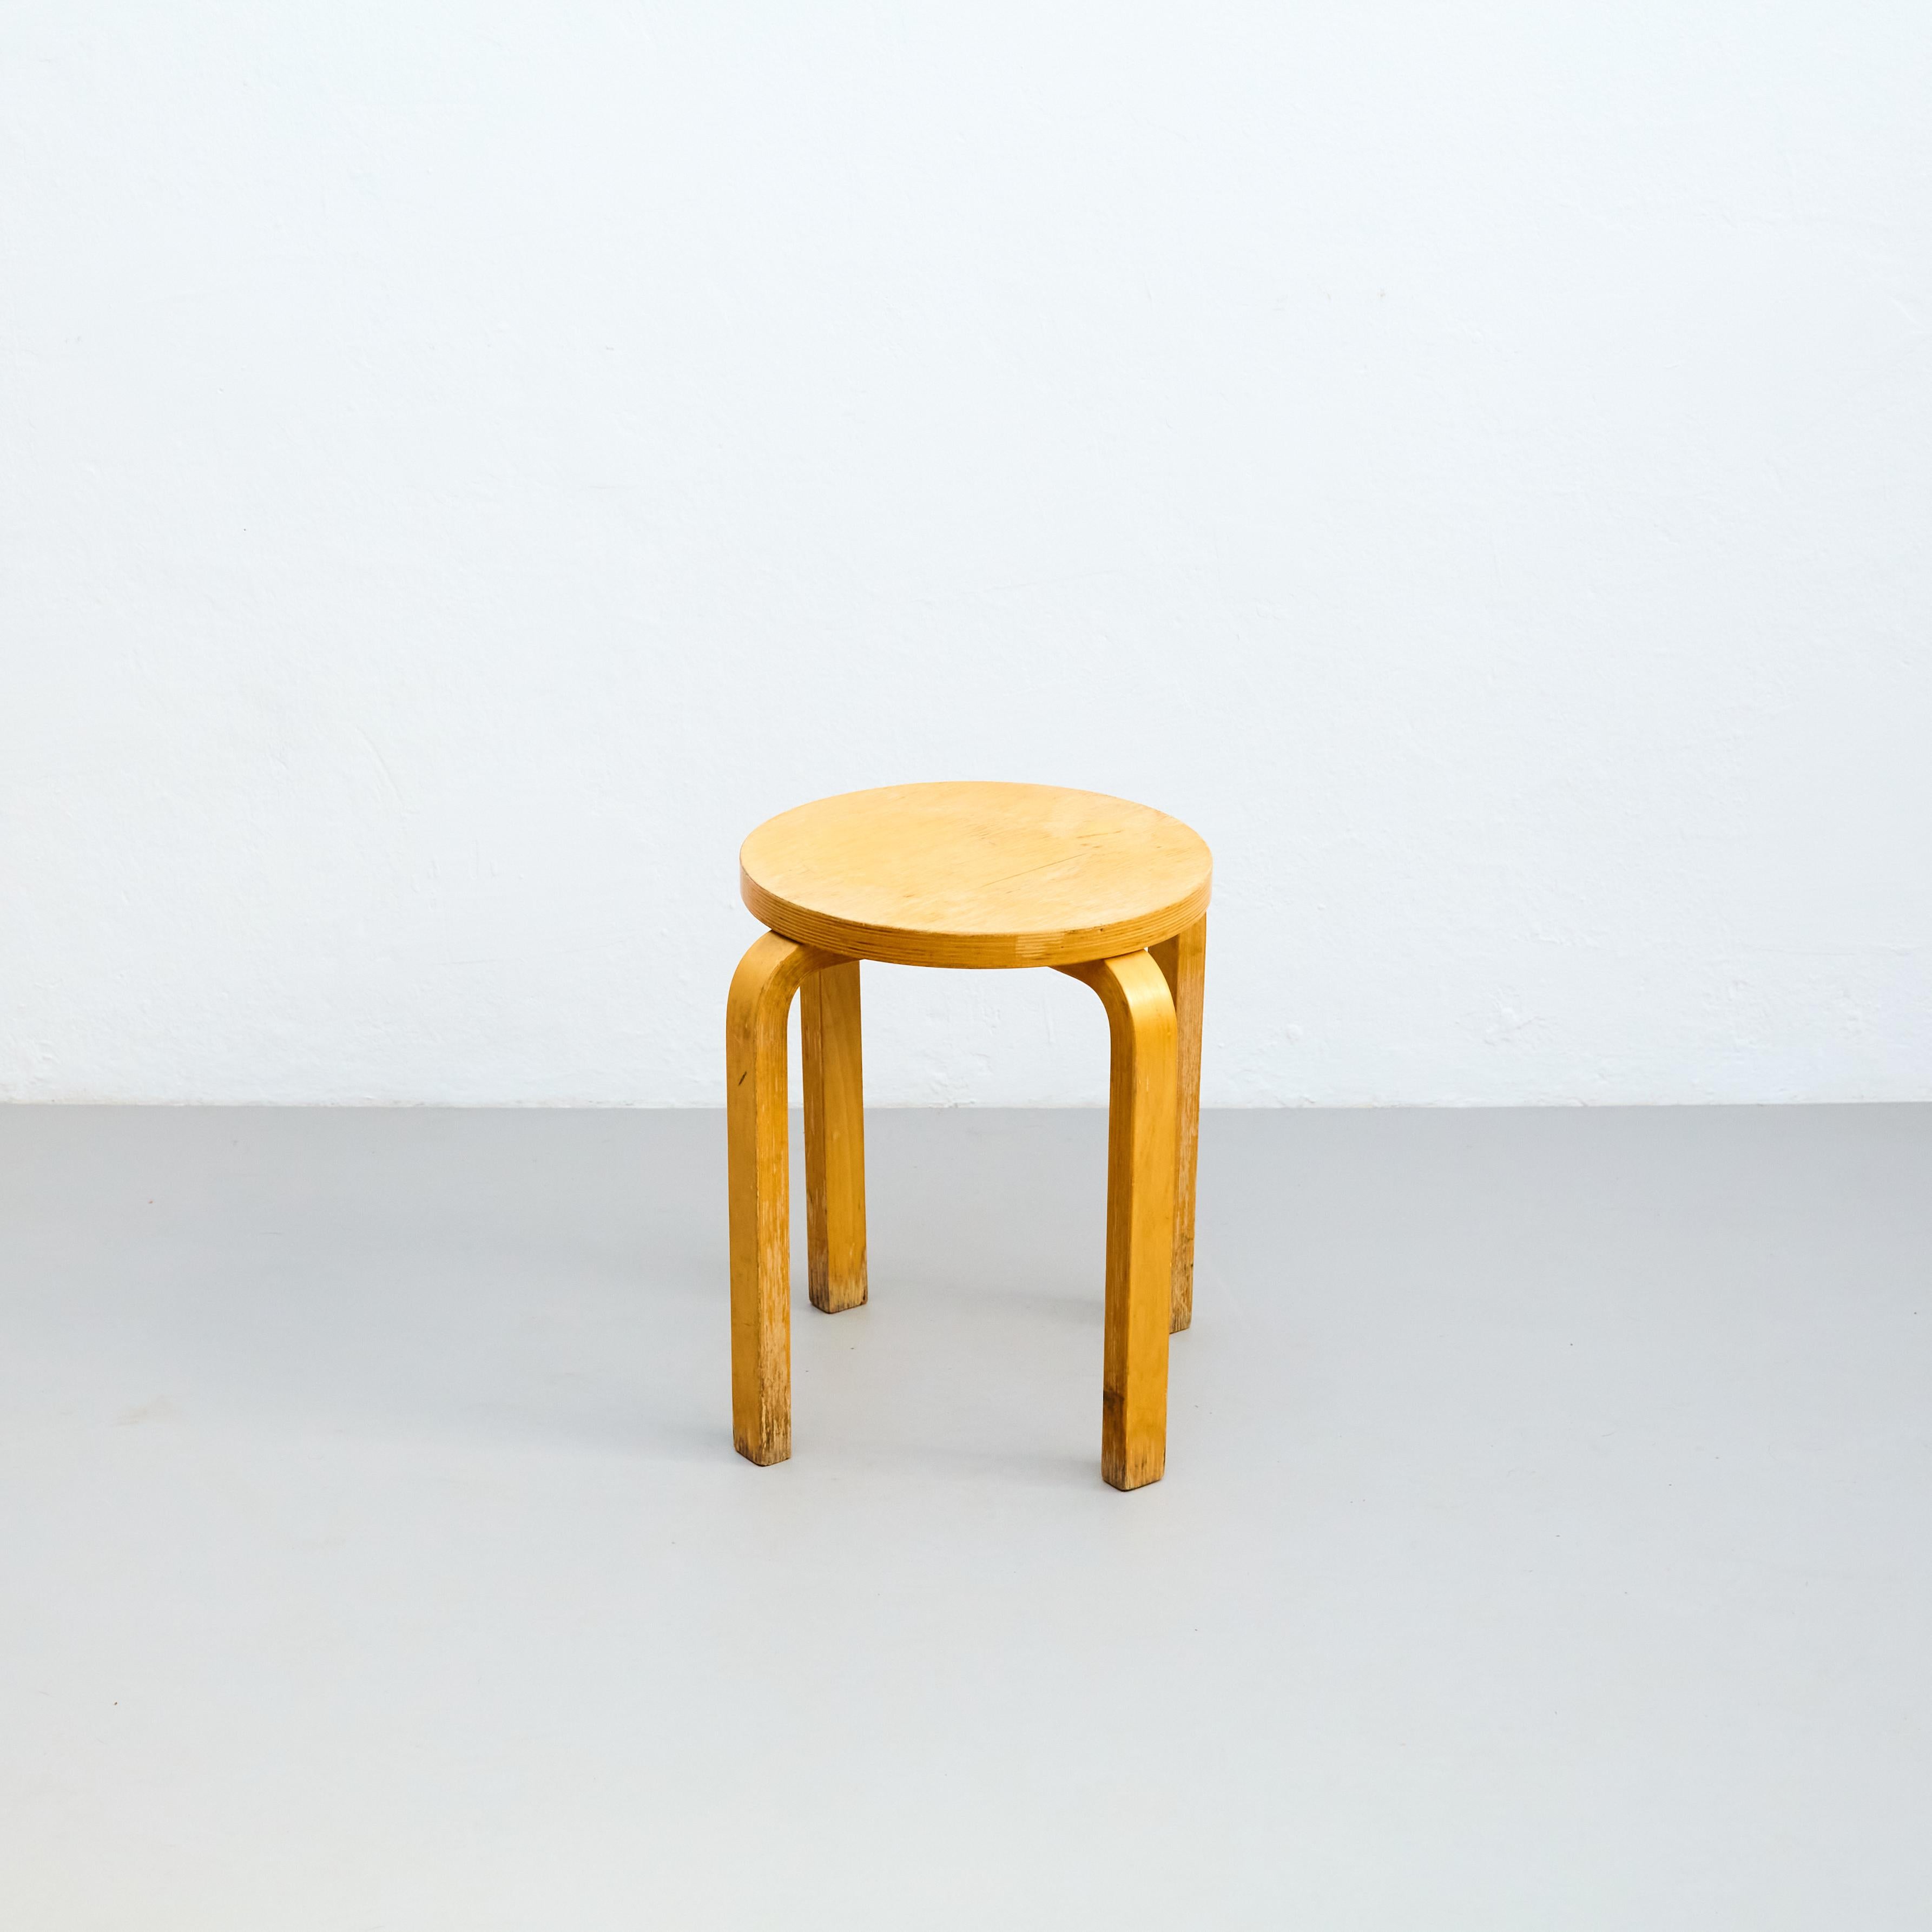 aalto style stool